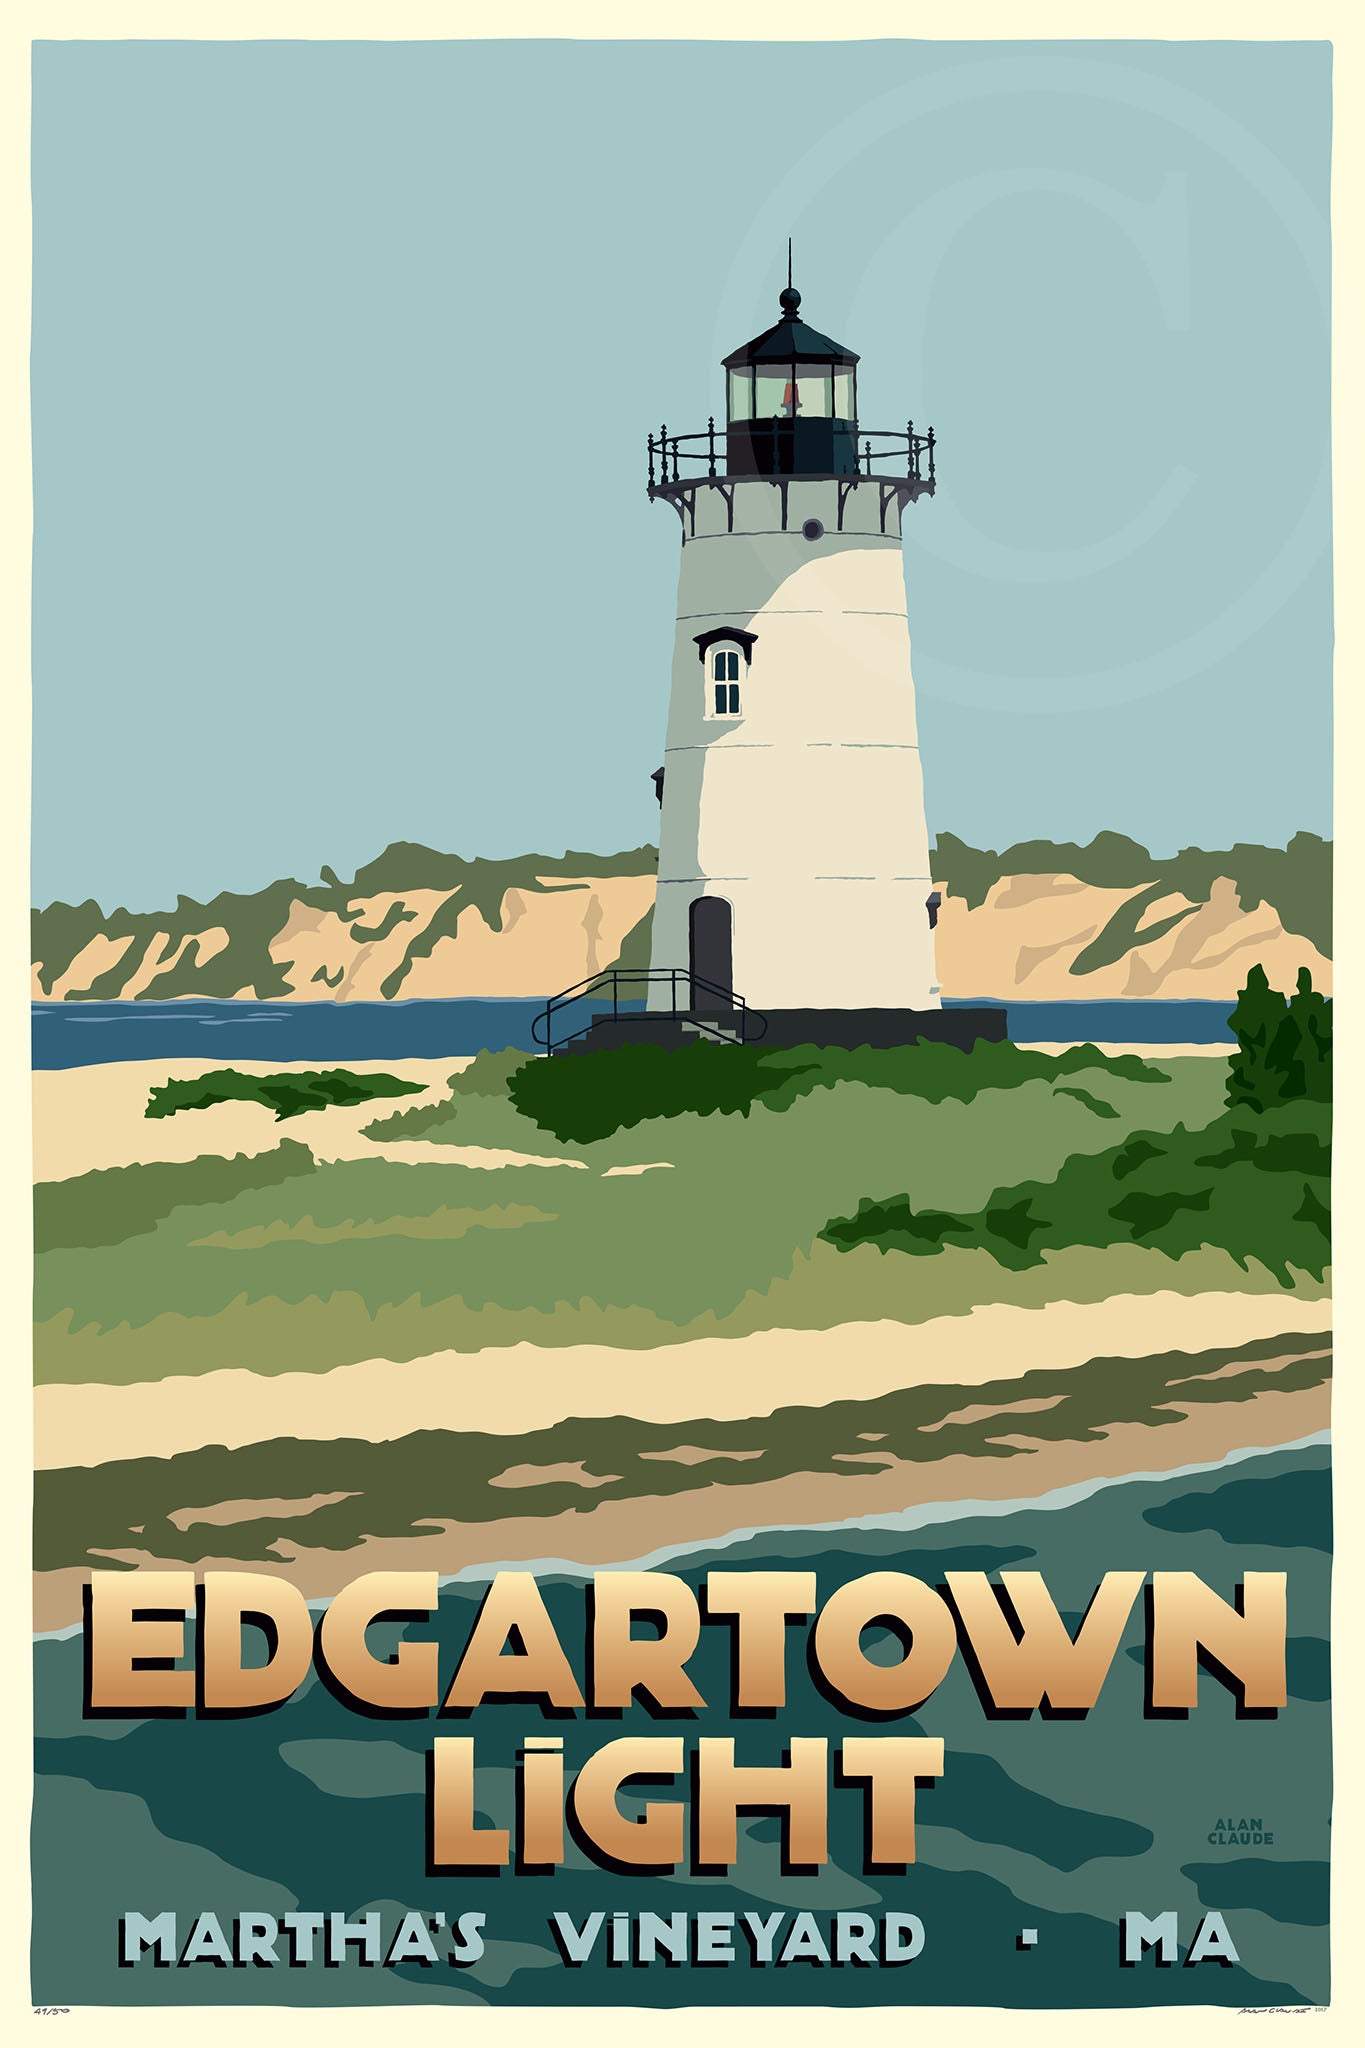 Edgartown Light Art Print 24" x 36" Travel Poster By Alan Claude - Massachusetts